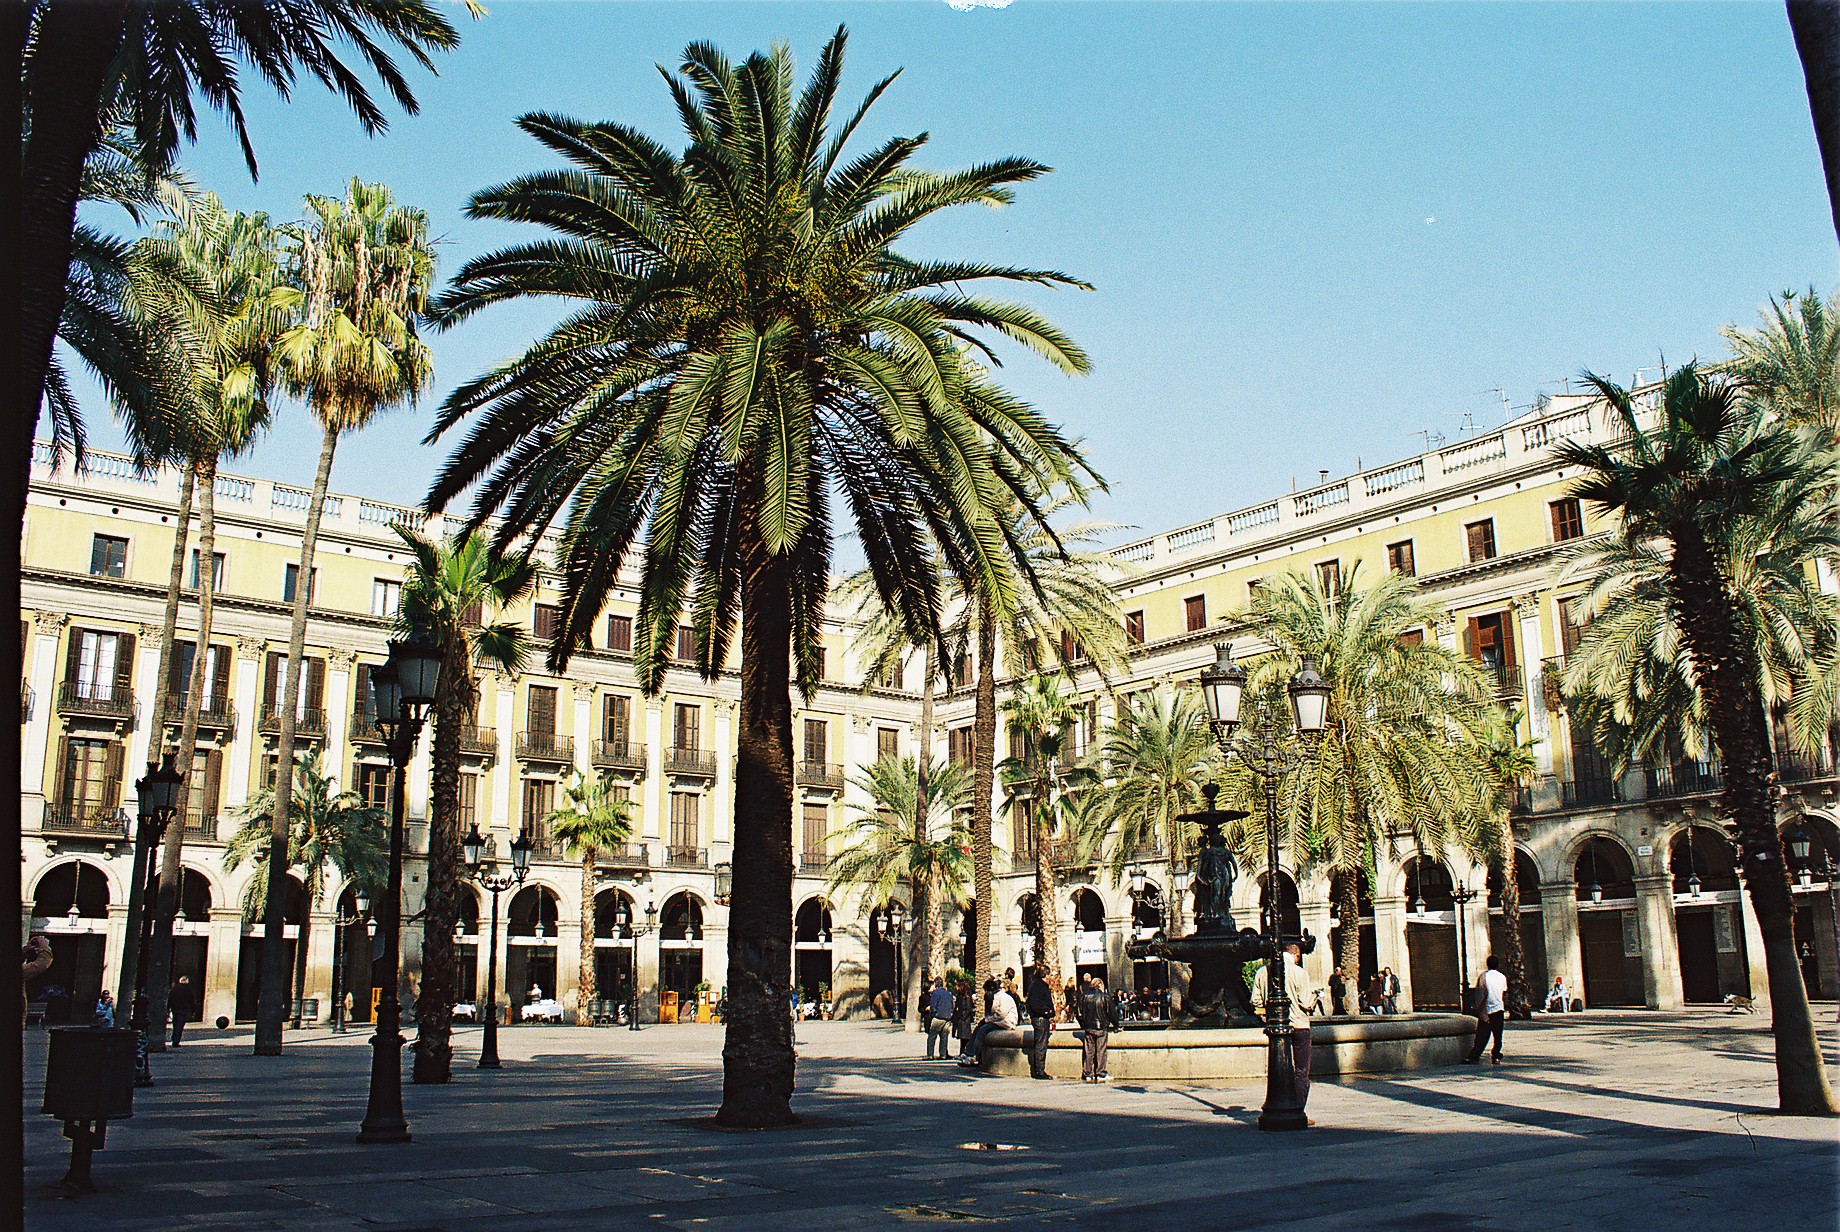 Placa Reial The Gothic Quarter Barcelona